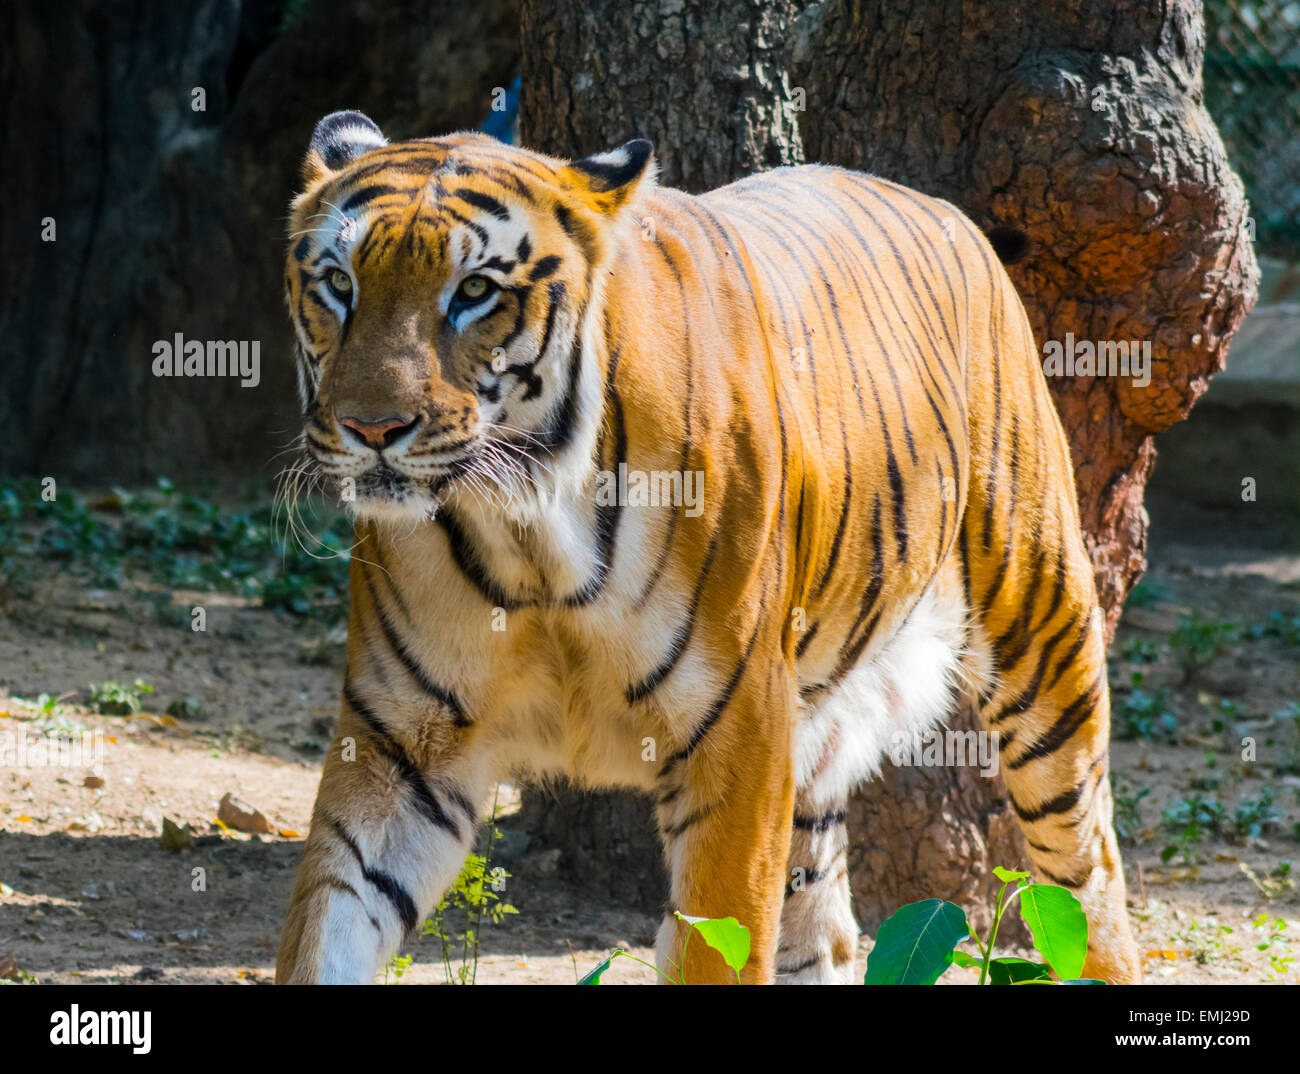 Gran tigre de Bengala tomando un paseo Foto de stock